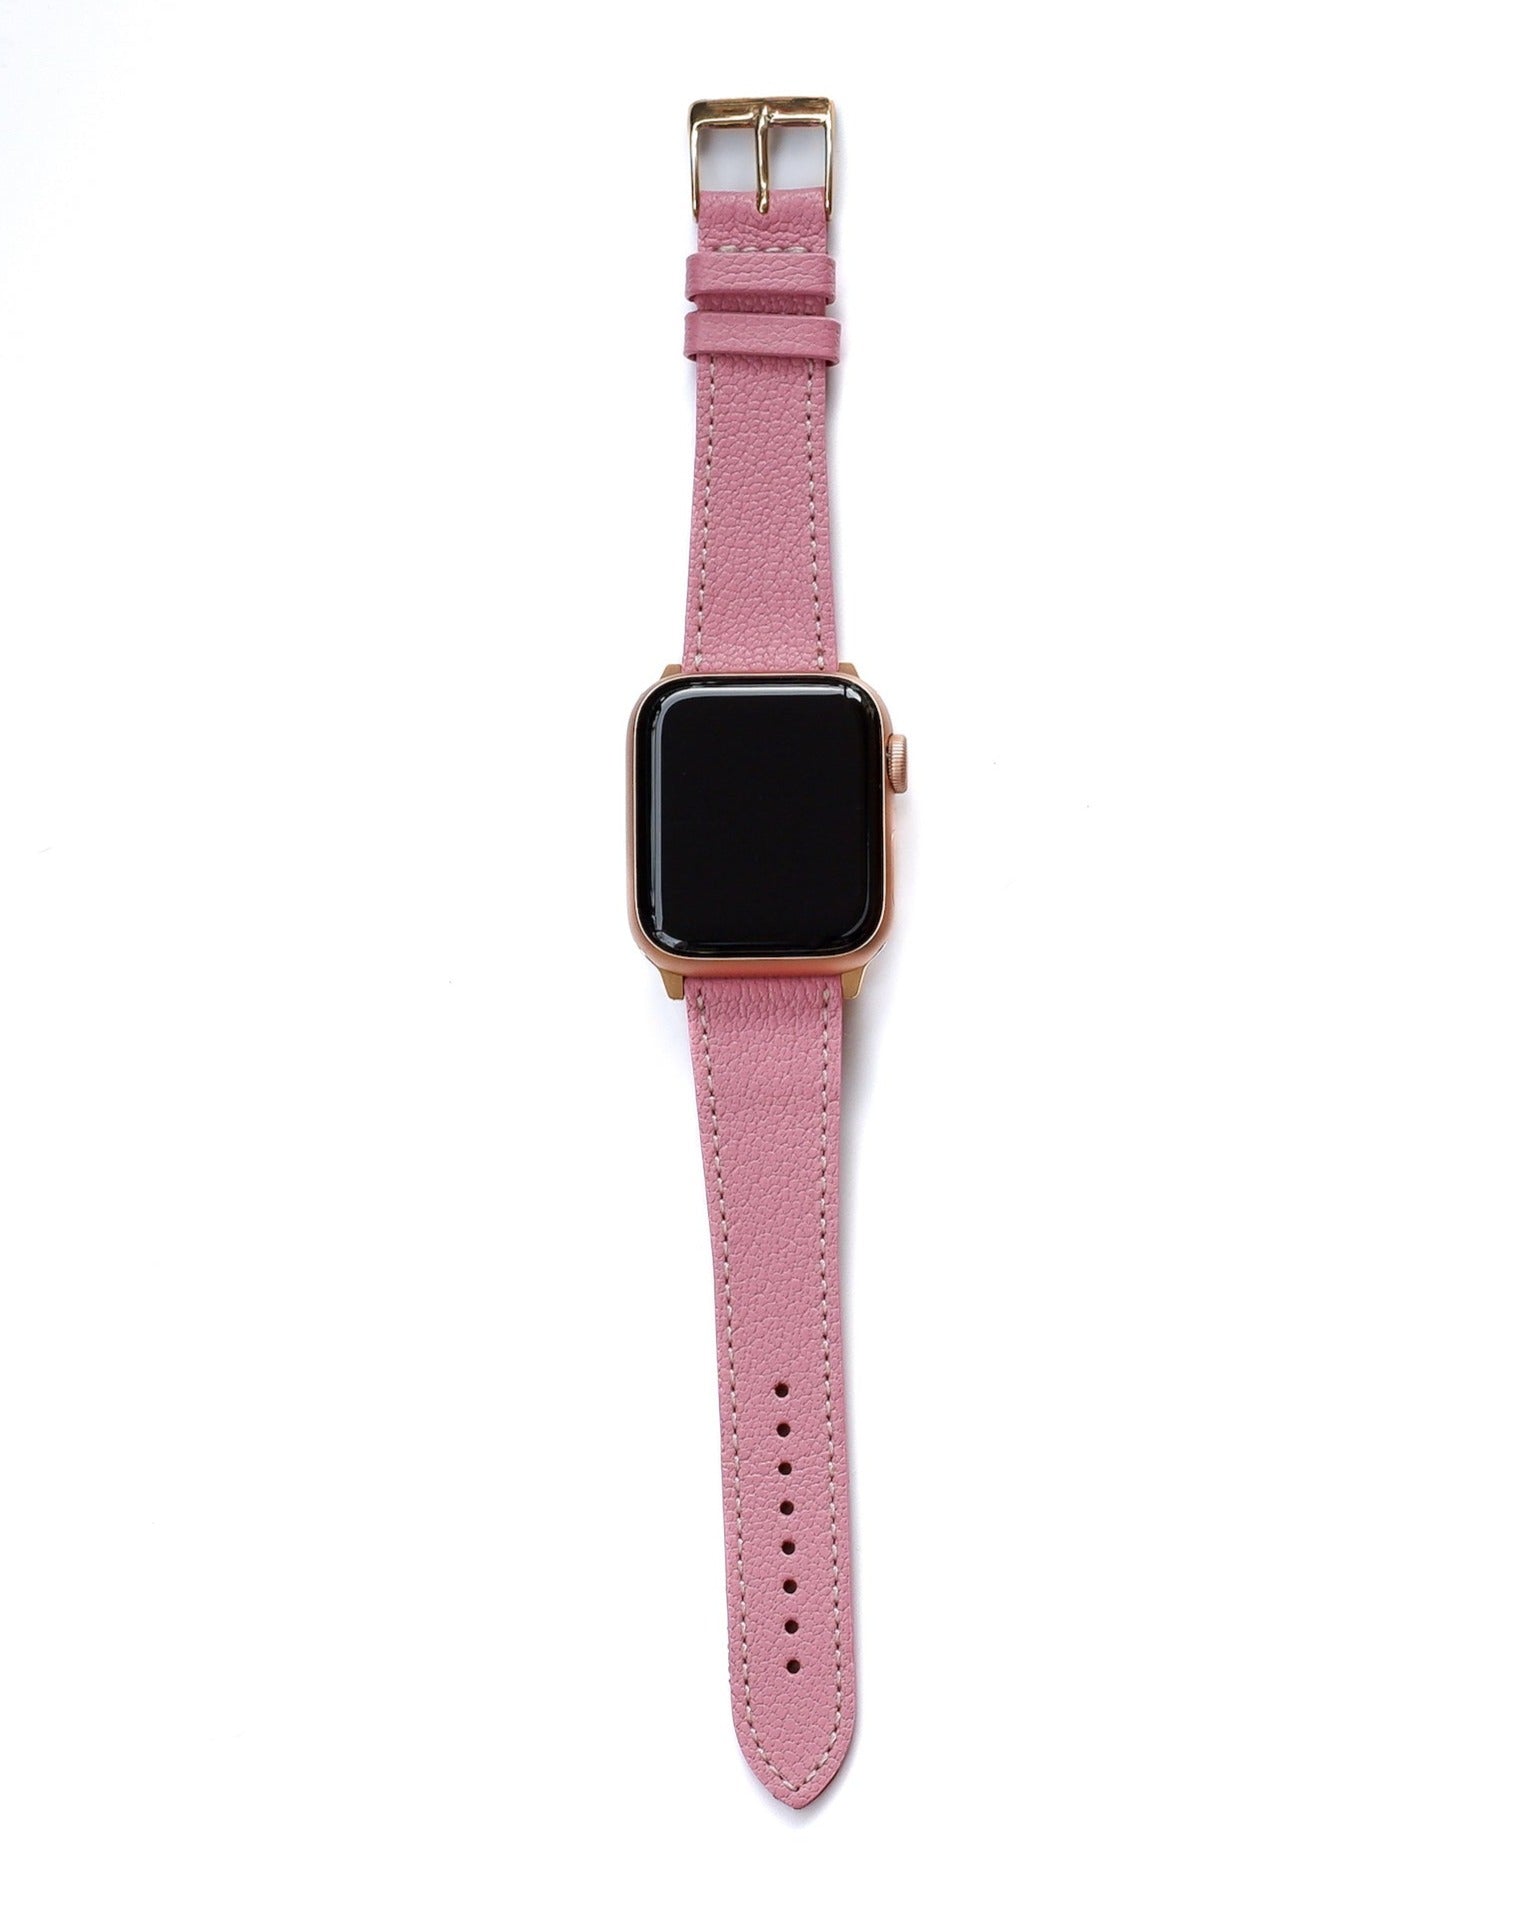 Goat Leather Slim | Armband aus Ziegenleder kompatibel mit Apple Watch-BerlinBravo